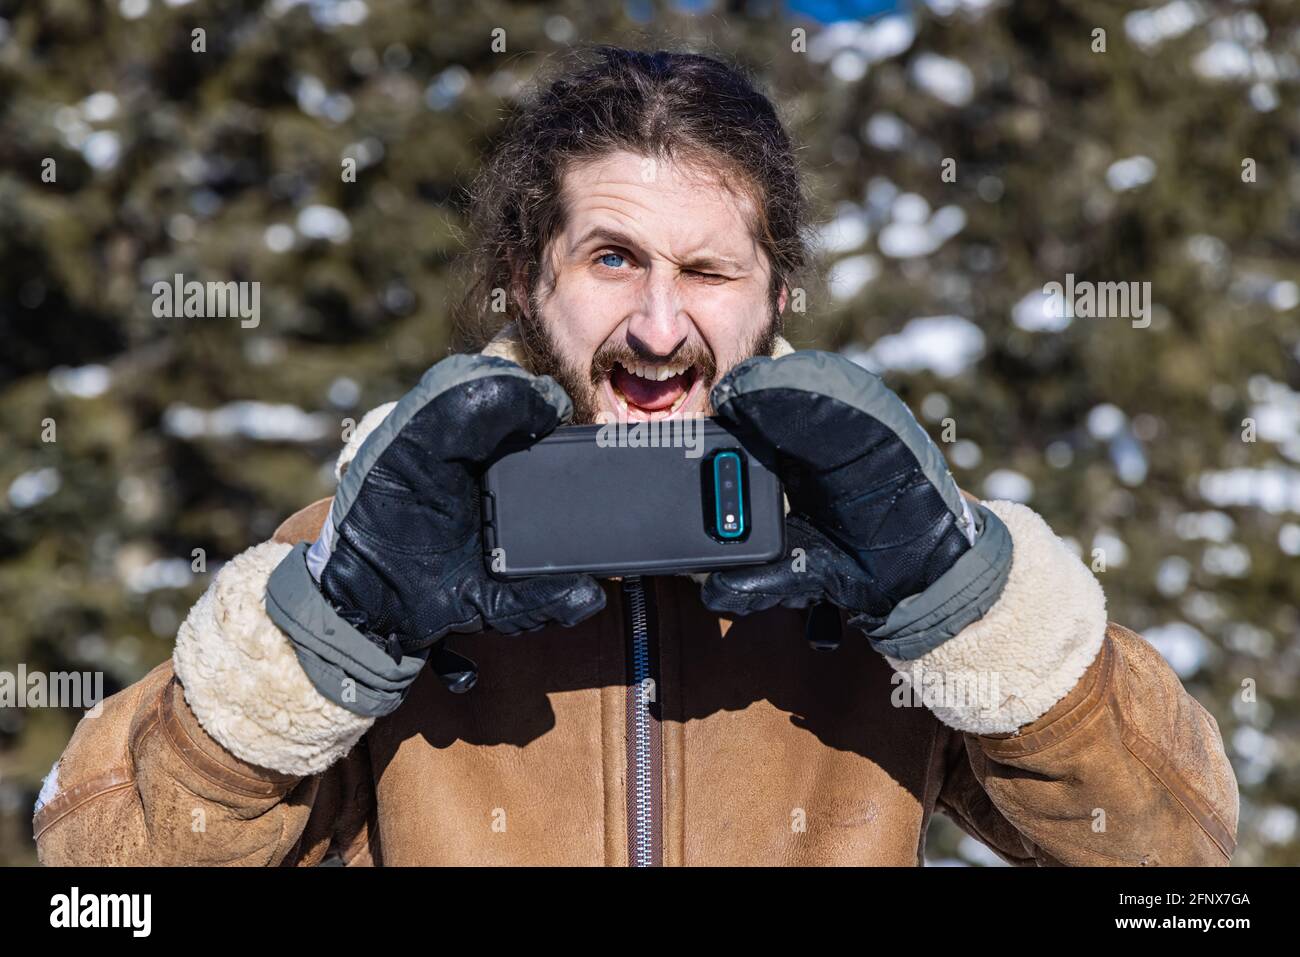 Dramatisch ironisches Porträt eines jungen Mannes in einem Wintermantel, der mit seinem Mobiltelefon ein Foto macht und dabei ein übertriebenes, witziges Gesicht macht. Stockfoto